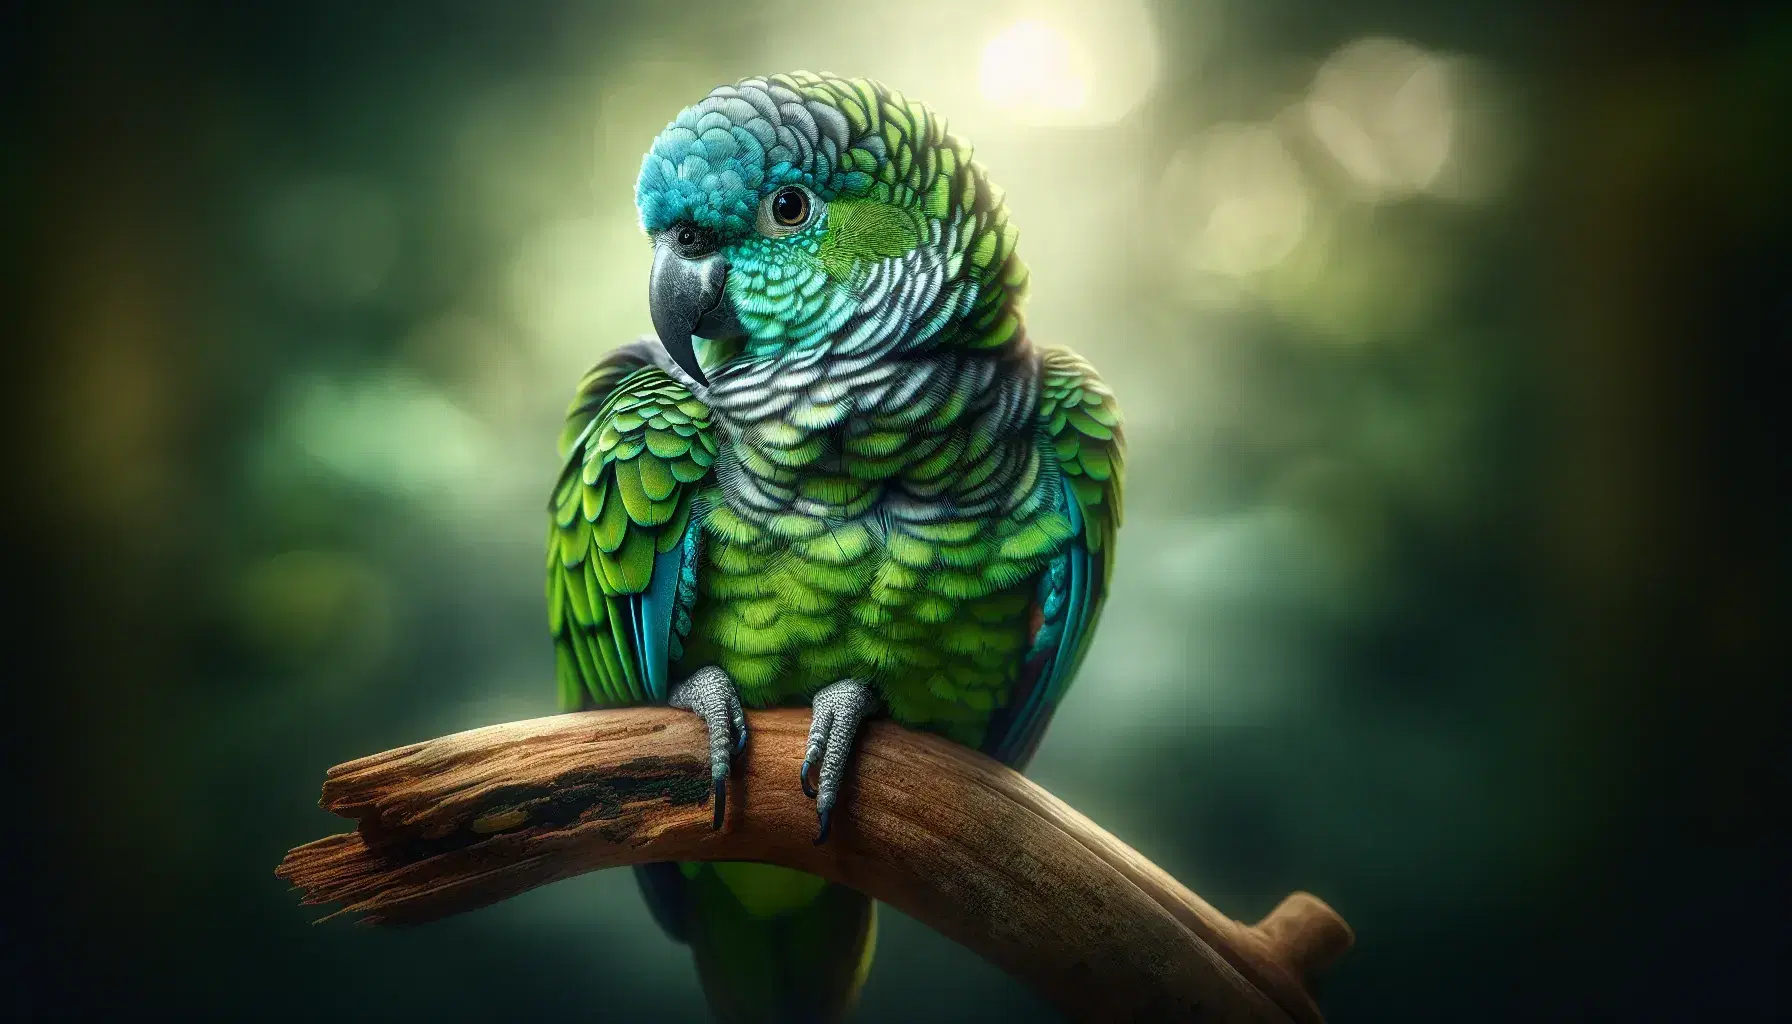 Loro con plumaje verde intenso, azul y amarillo posado en rama natural, con fondo desenfocado de vegetación, mirada atenta y pico gris oscuro.